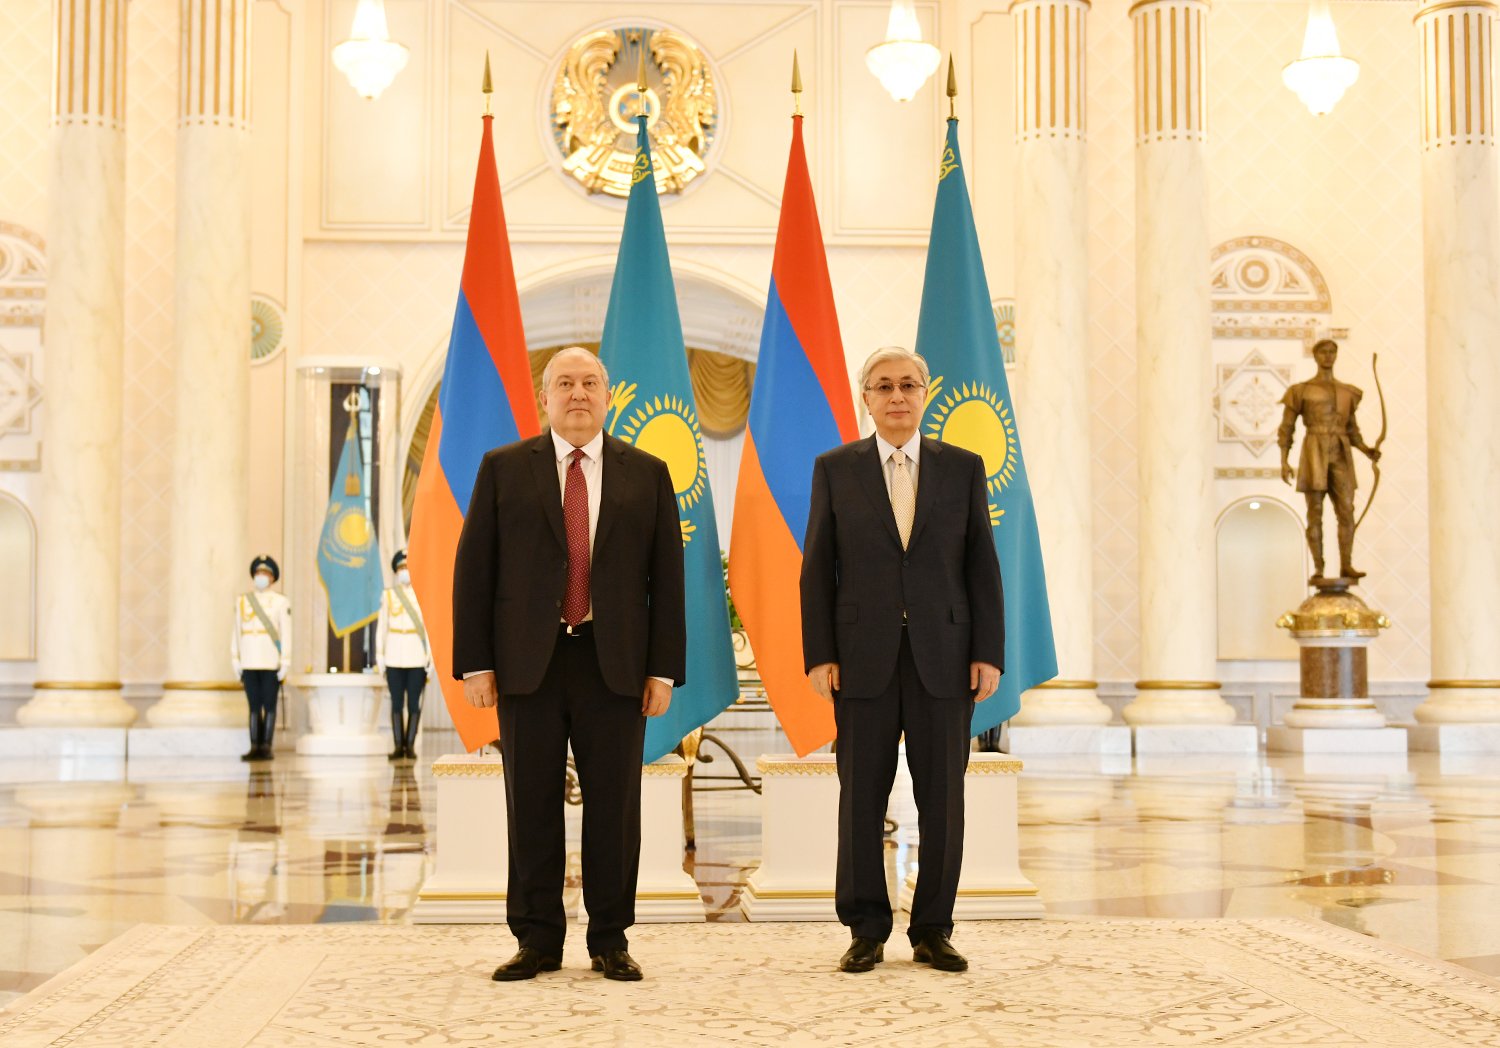 Նուր-Սուլթանում տեղի է ունեցել Հայաստանի և Ղազախստանի նախագահների հանդիպումը